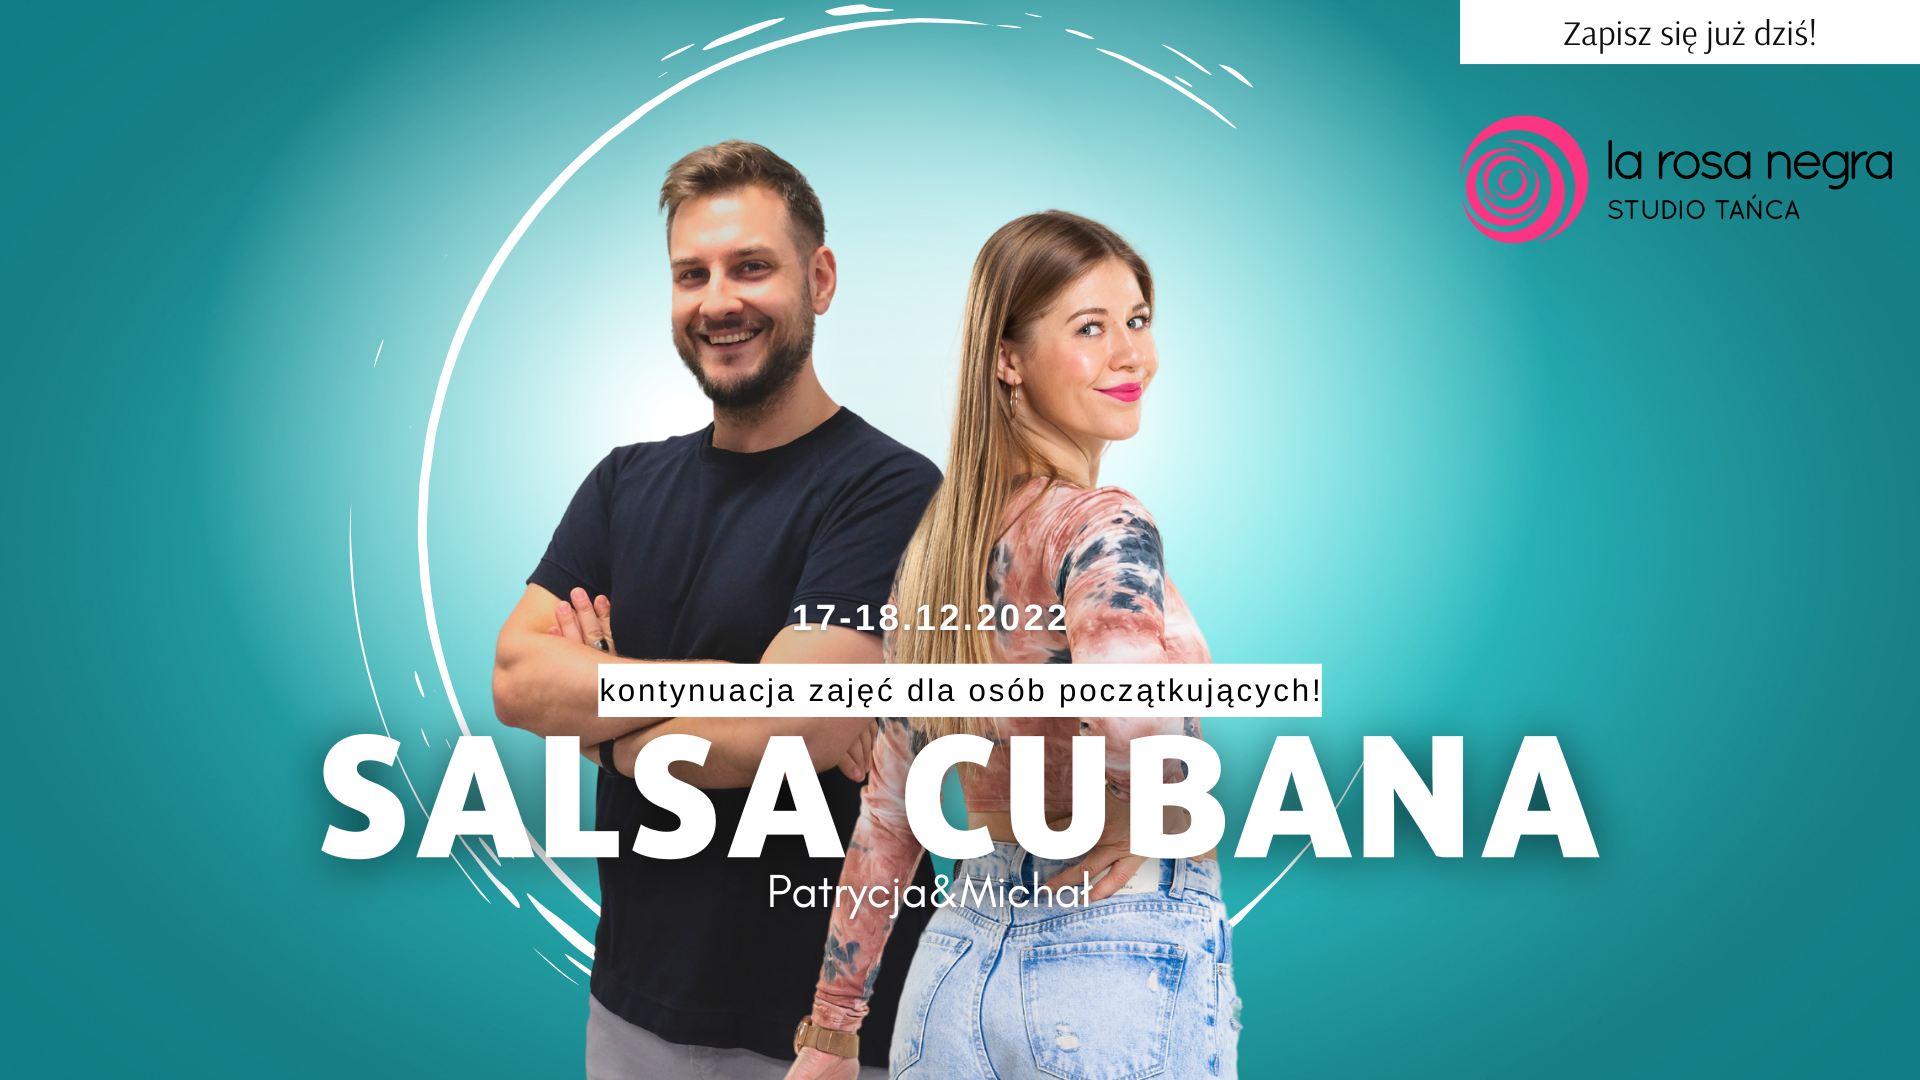 Salsa cubana- kontynuacja podstaw z Patrycją&Michałem - zajęcia weekendowe